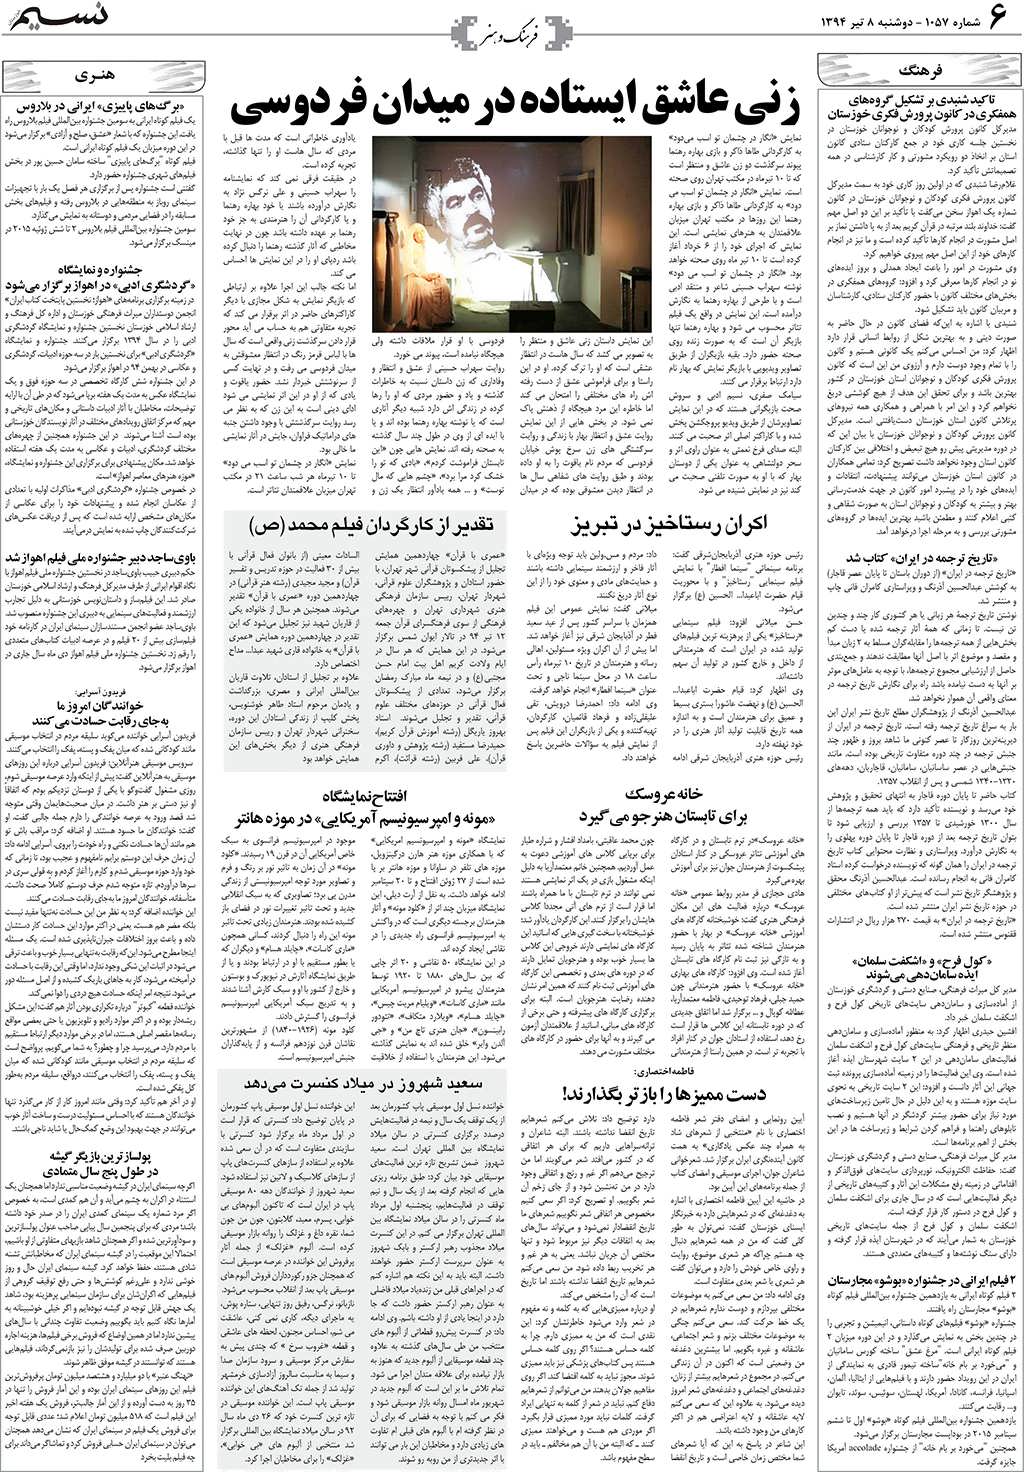 صفحه فرهنگ و هنر روزنامه نسیم شماره 1057